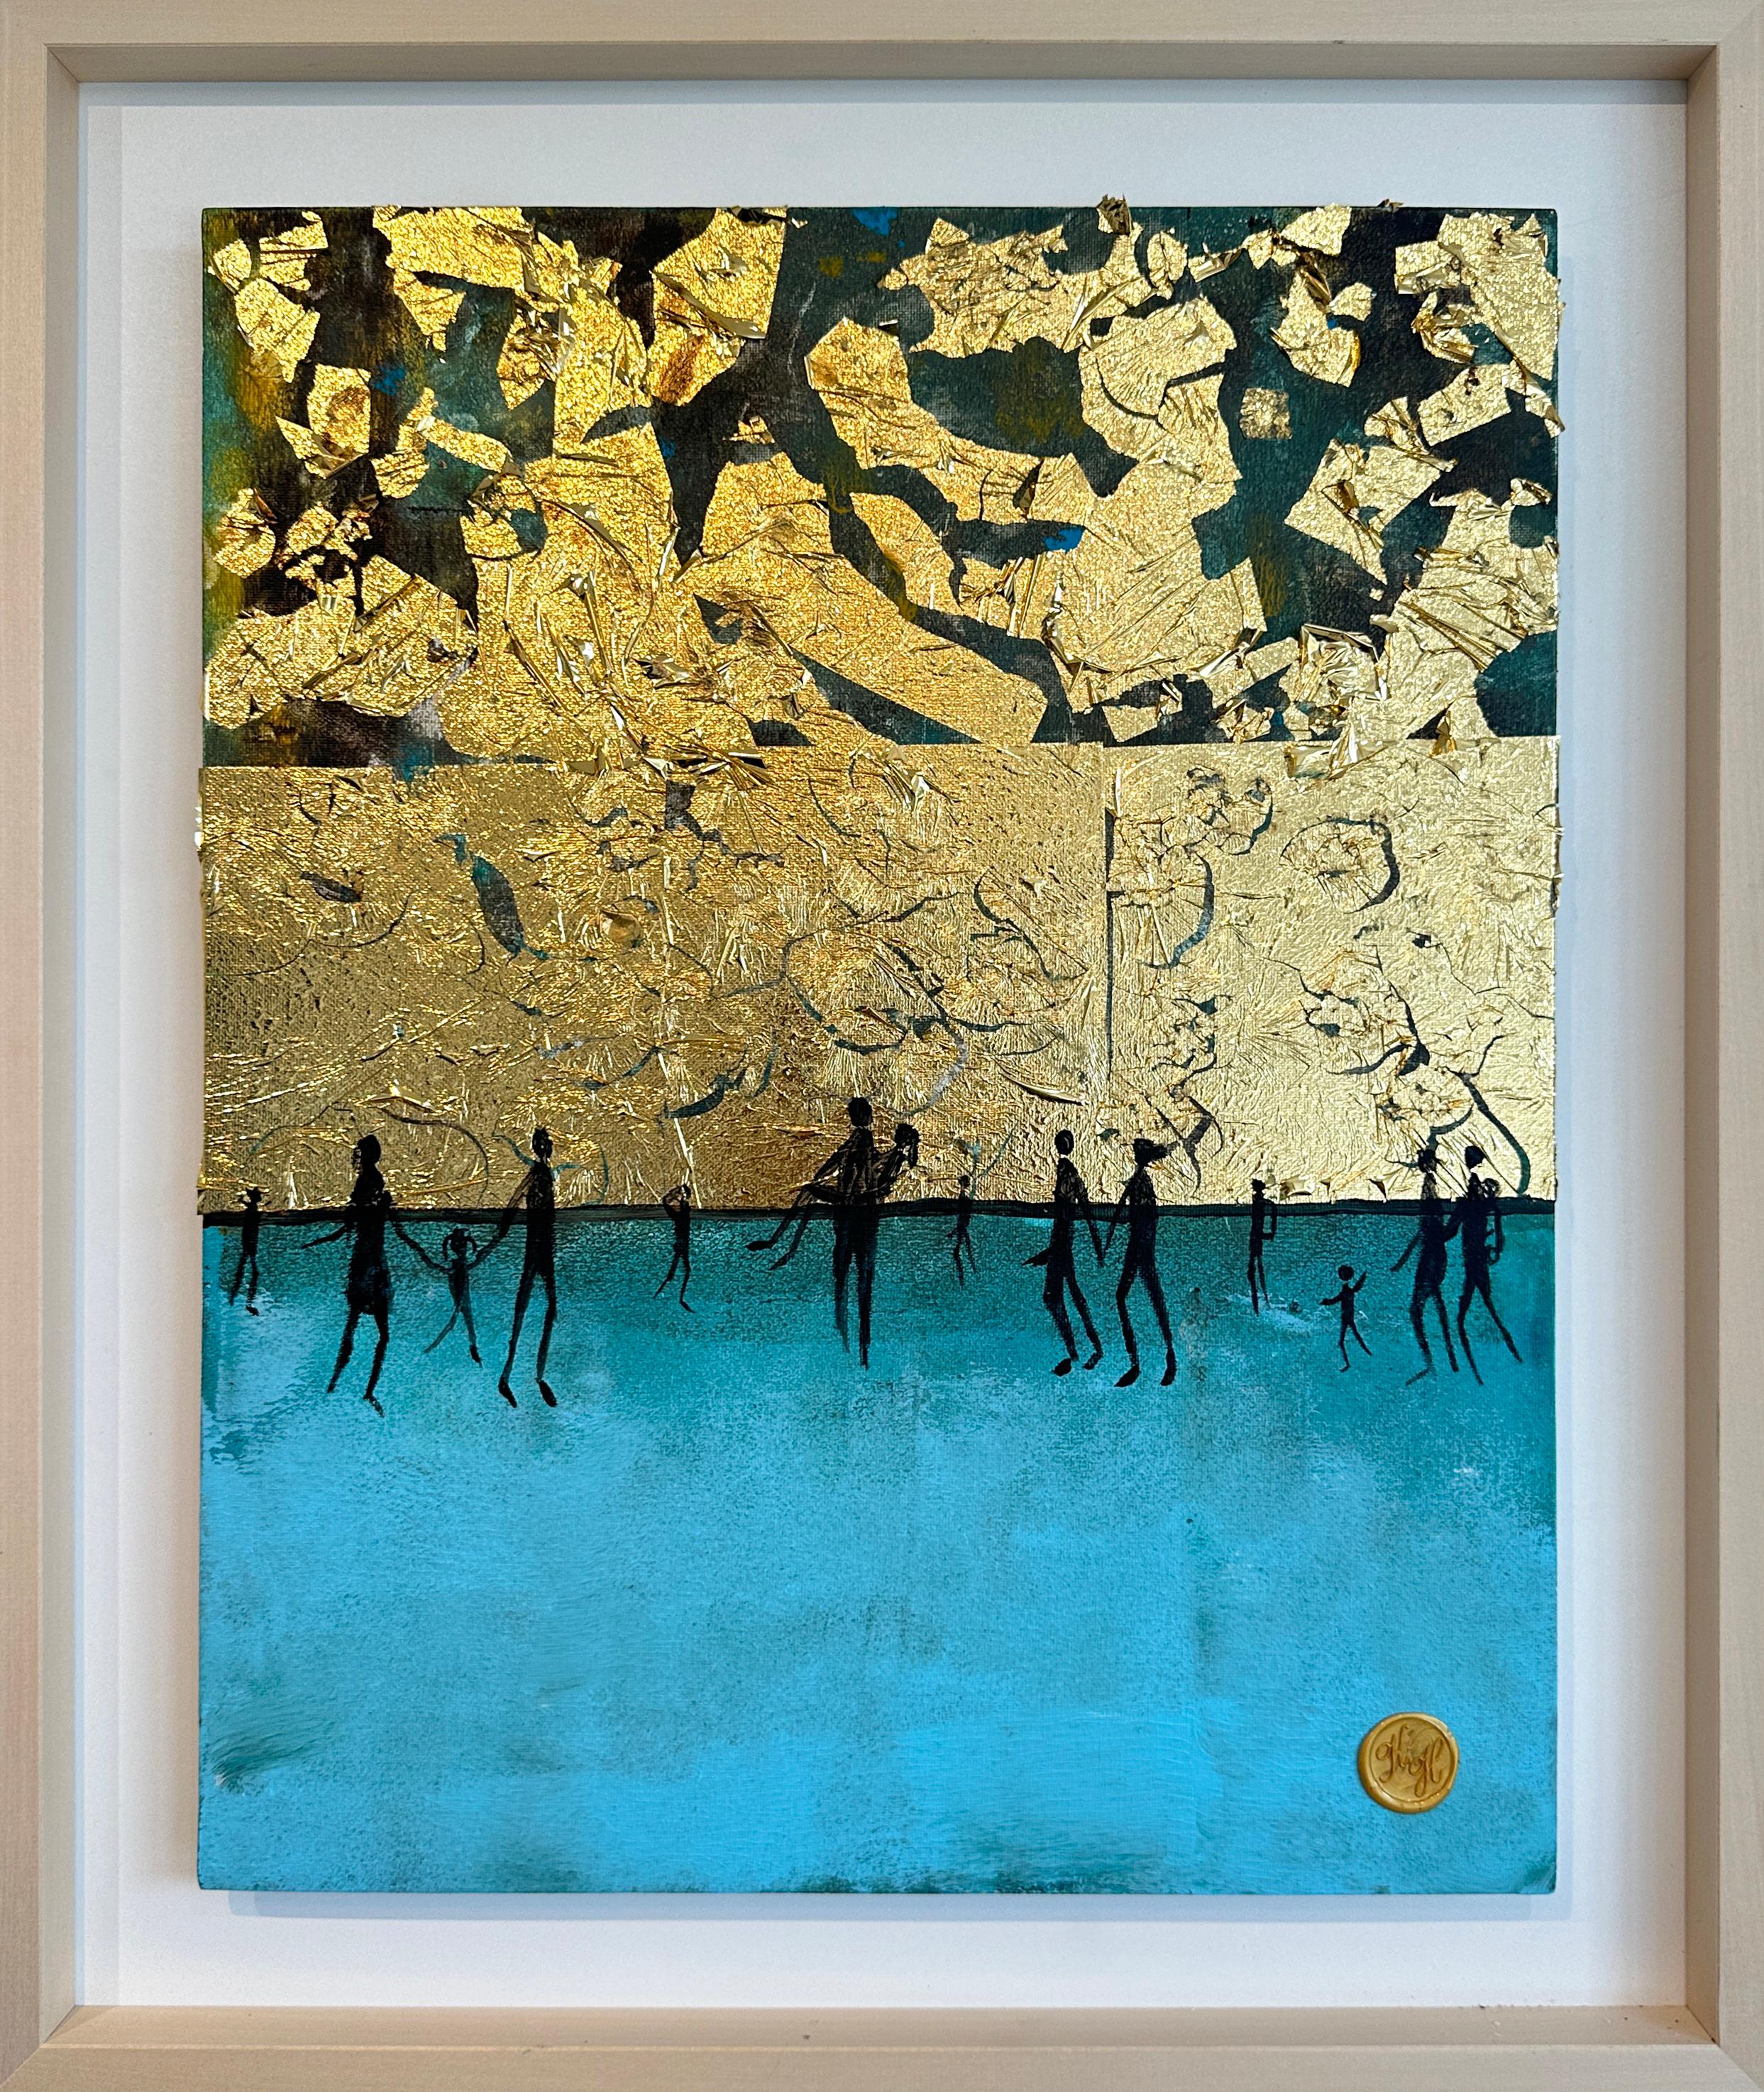 Momenti sull'acqua - Foglia d'oro Quadro astratto contemporaneo di famiglia - Painting di Katharina Hormel